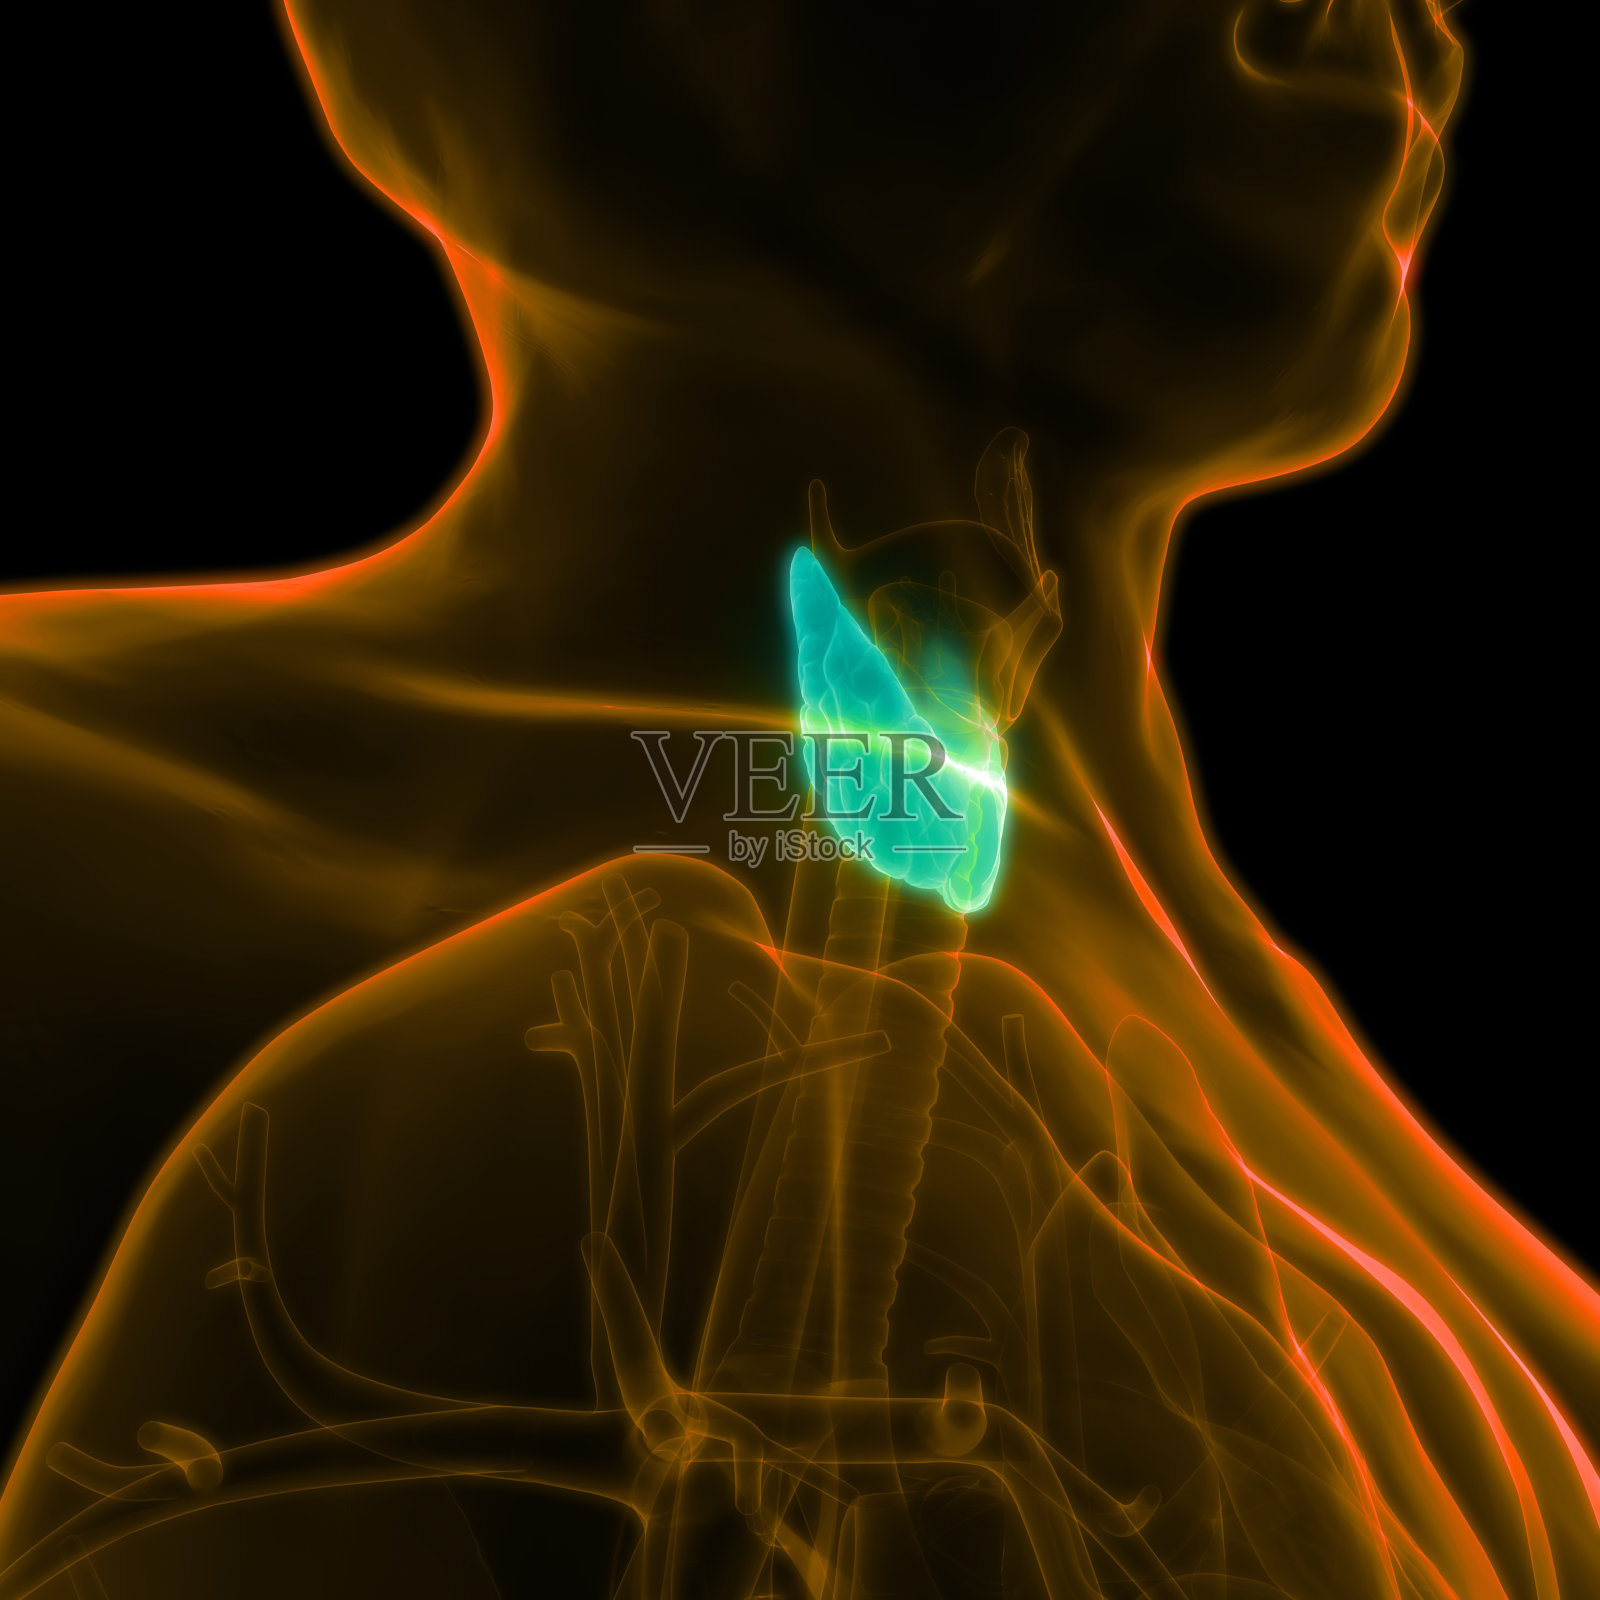 人体腺体解剖学(甲状腺)照片摄影图片